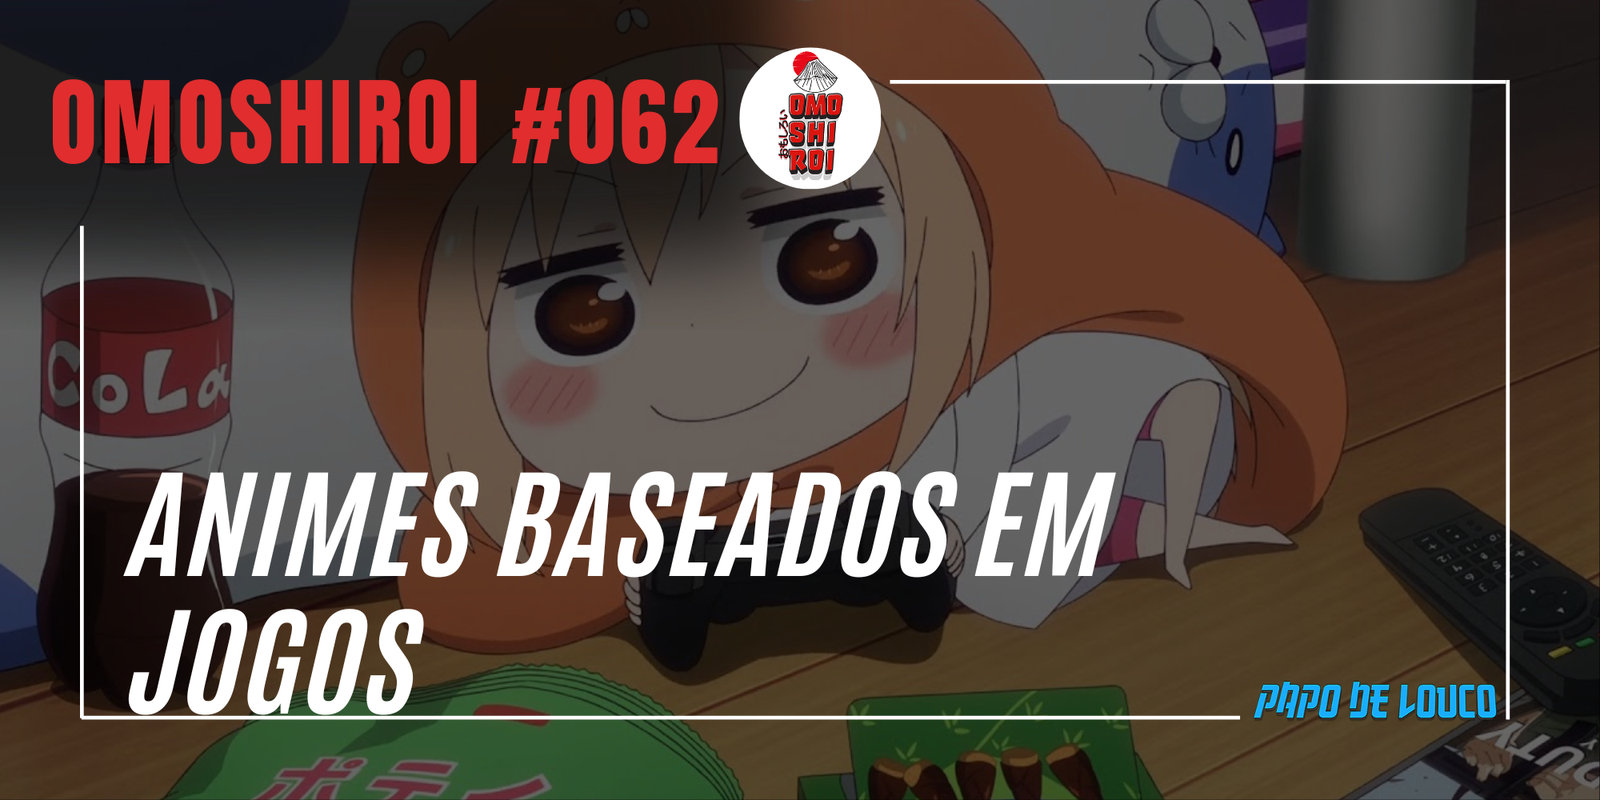 Otacast #29 Jogos Baseados em Animes